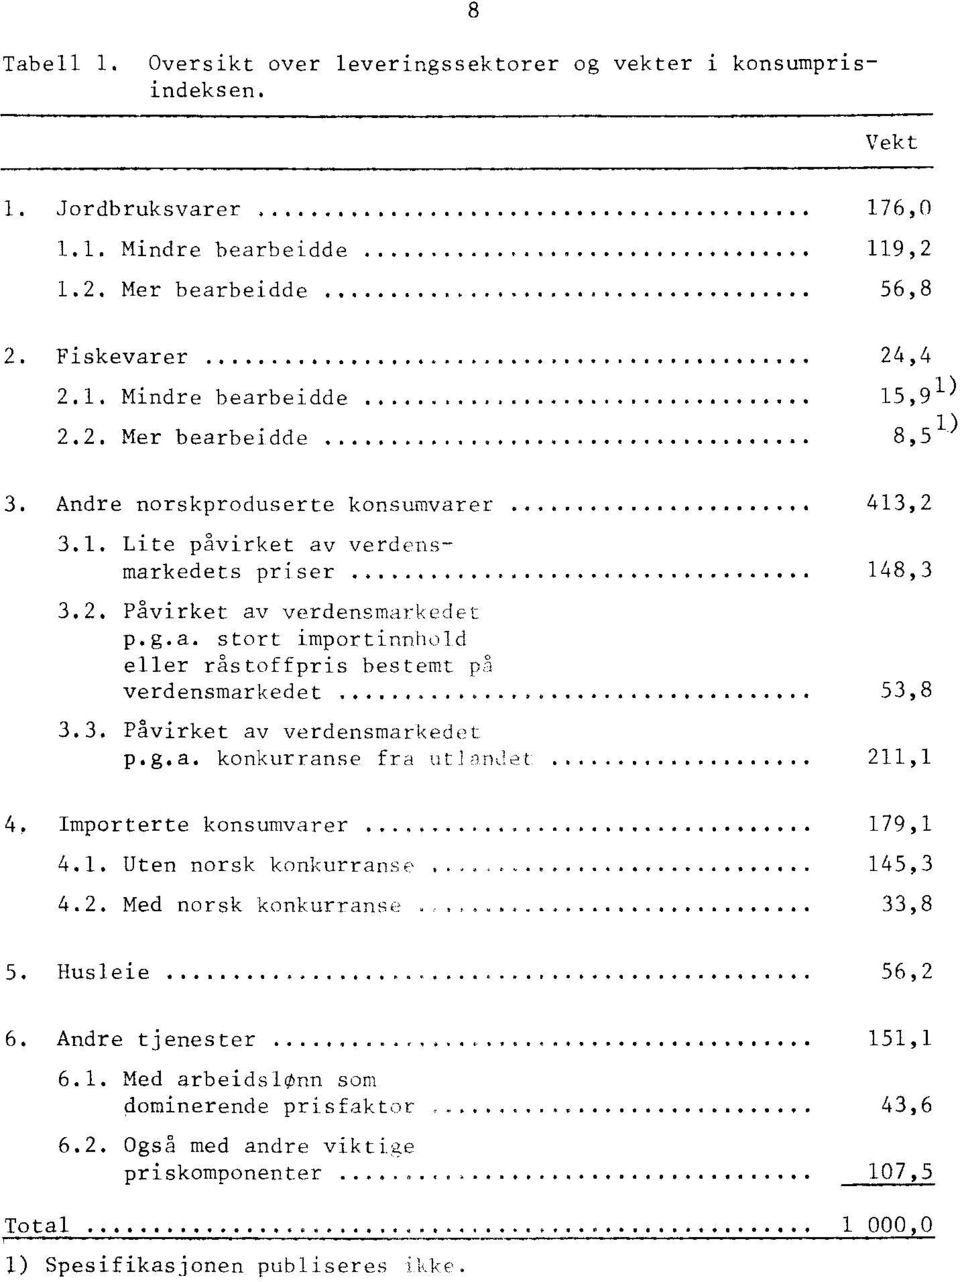 ..... 53,8 3.3. Påvirket av verdensmarkedet p.g.a. konkurranse fra uti-indet 211,1 4. Importerte konsumvarer 179,1 4.1. Uten norsk konkurranse 145,3 4.2. Med norsk konkurranse 33,8 5. Husleie 56,2 6.